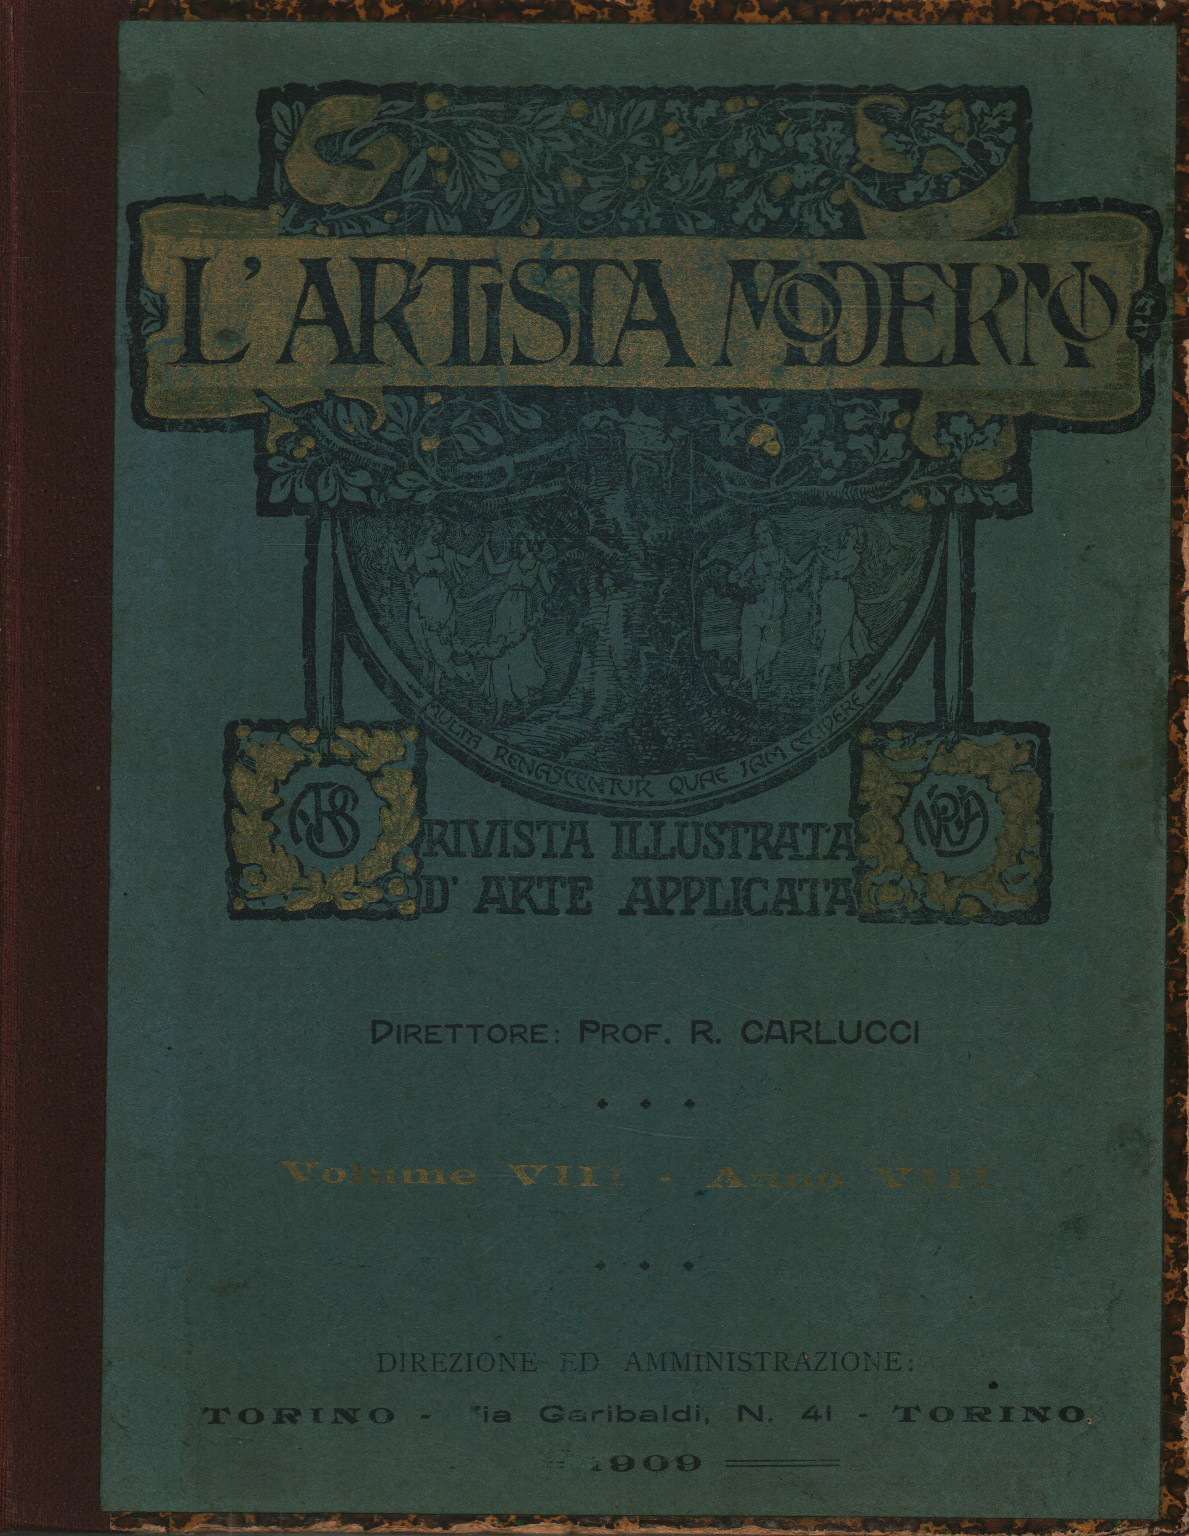 El artista moderno Vol. VIII Año VIII 1909, s.a.